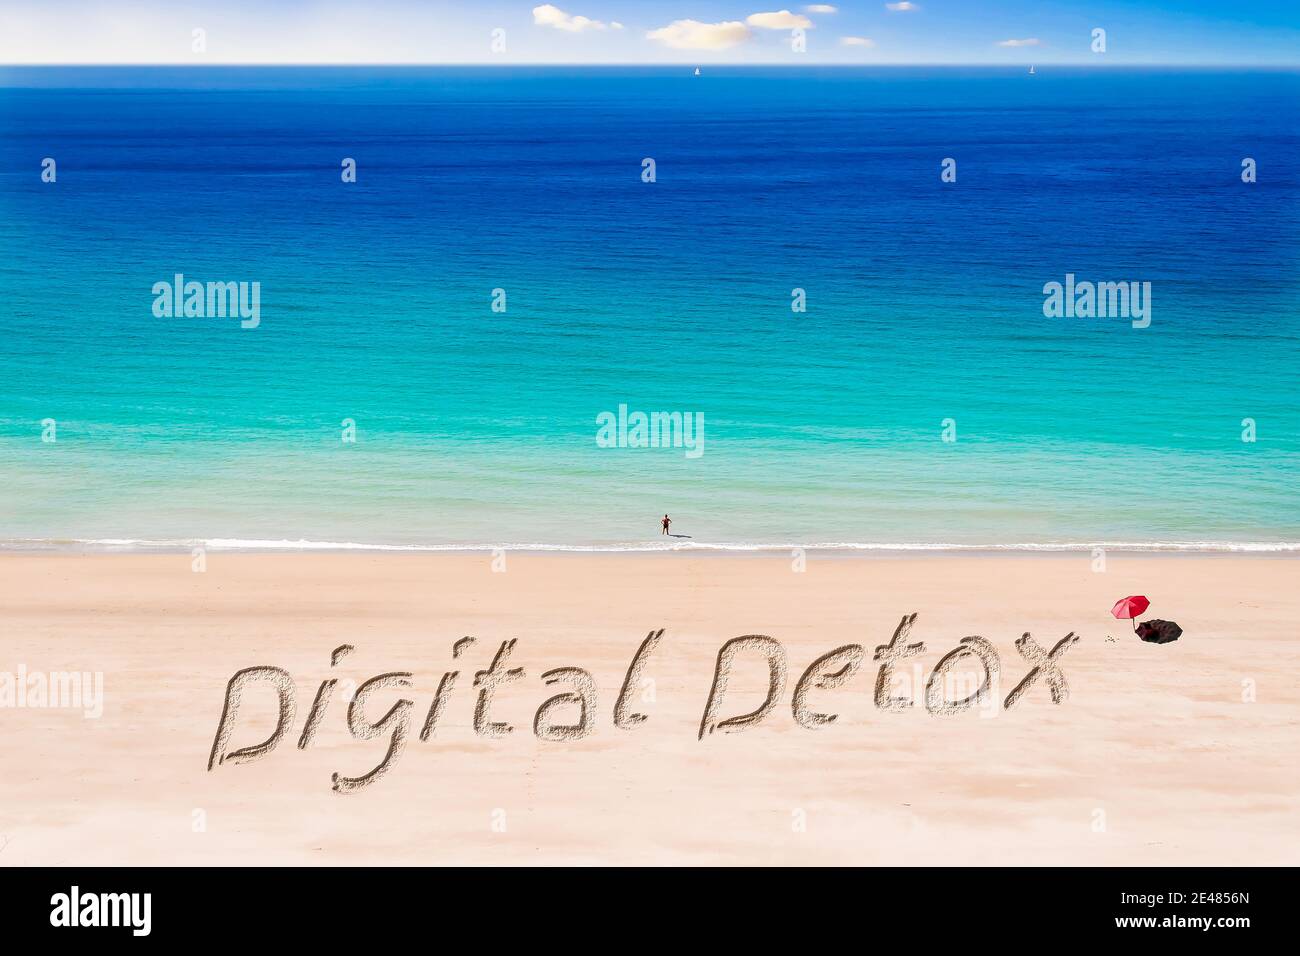 Le parole Digital Detox scritto su una spiaggia di Sunny Foto Stock